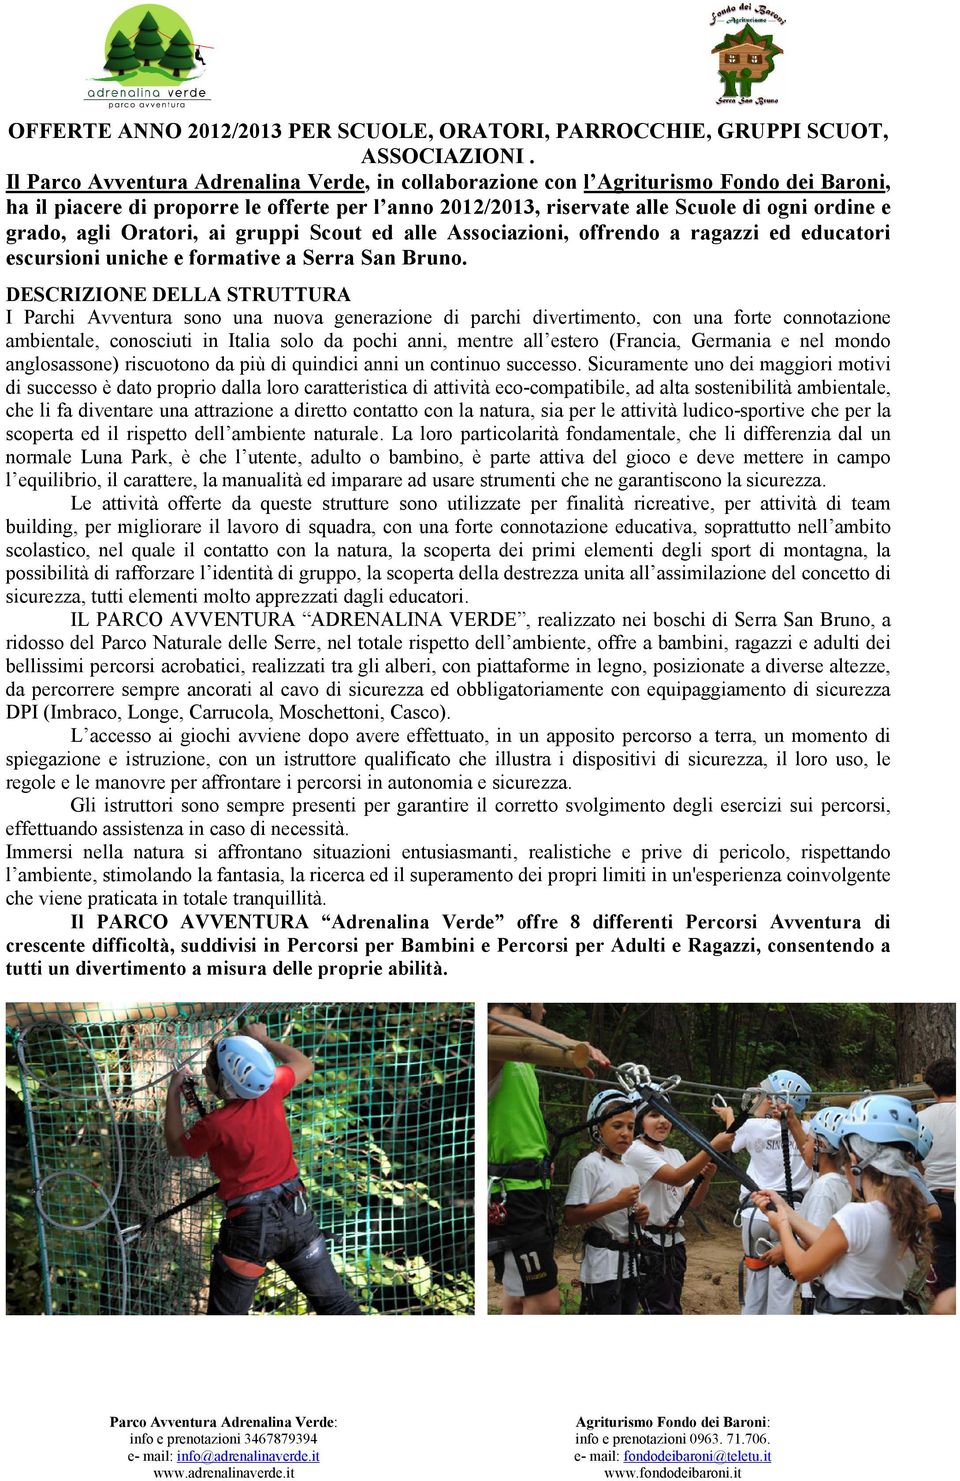 agli Oratori, ai gruppi Scout ed alle Associazioni, offrendo a ragazzi ed educatori escursioni uniche e formative a Serra San Bruno.